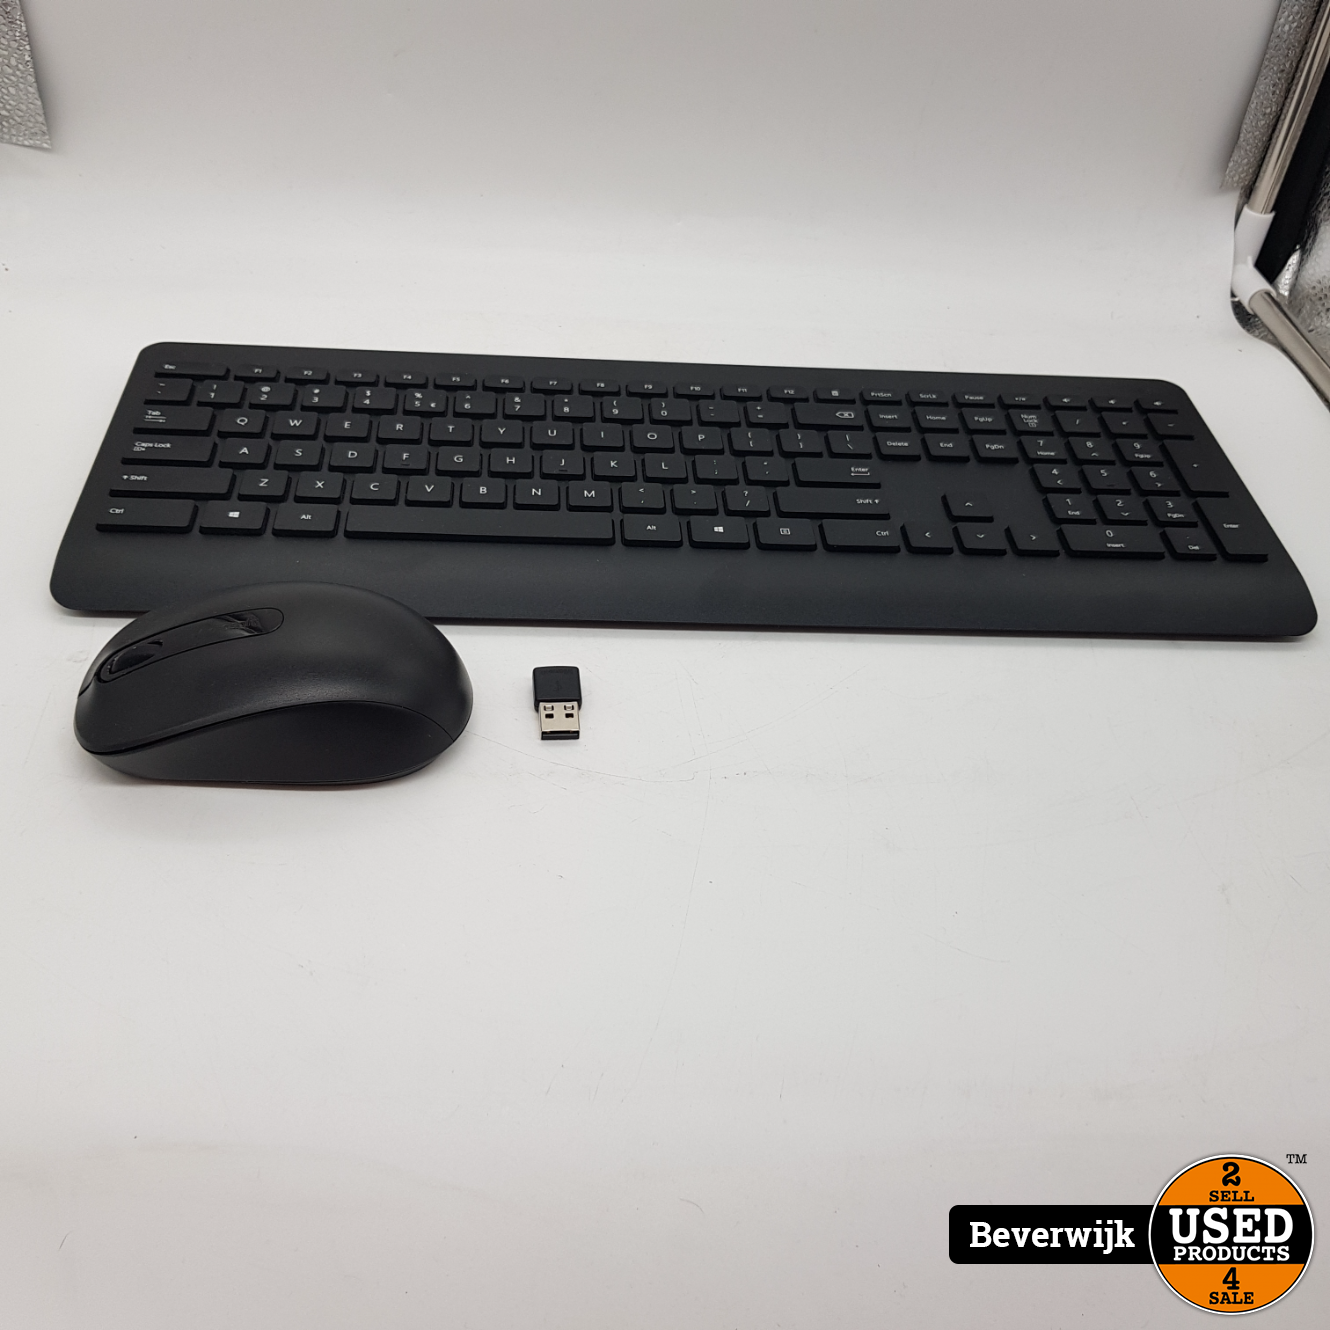 avond Vermaken prinses Microsoft Draadloos toetsenbord met muis - In Nette Staat - Used Products  Beverwijk